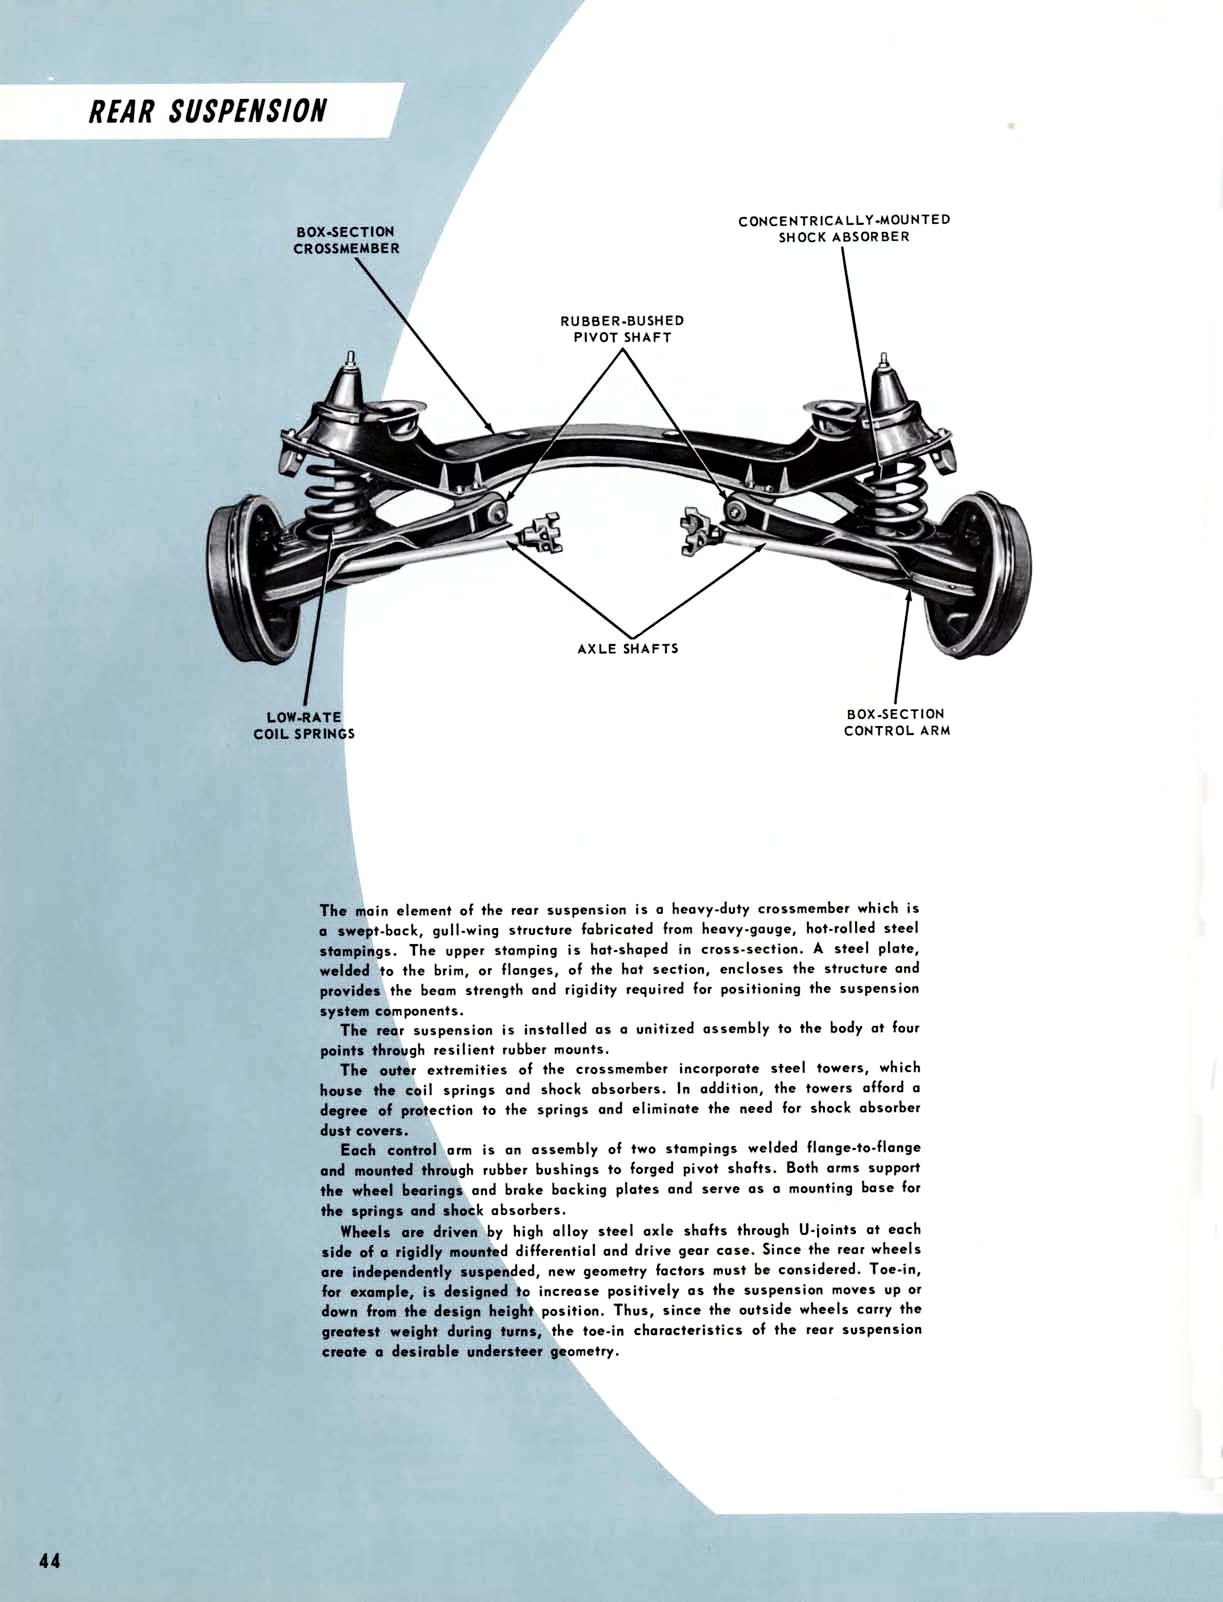 1961 Chevrolet Truck Engineering Features-44